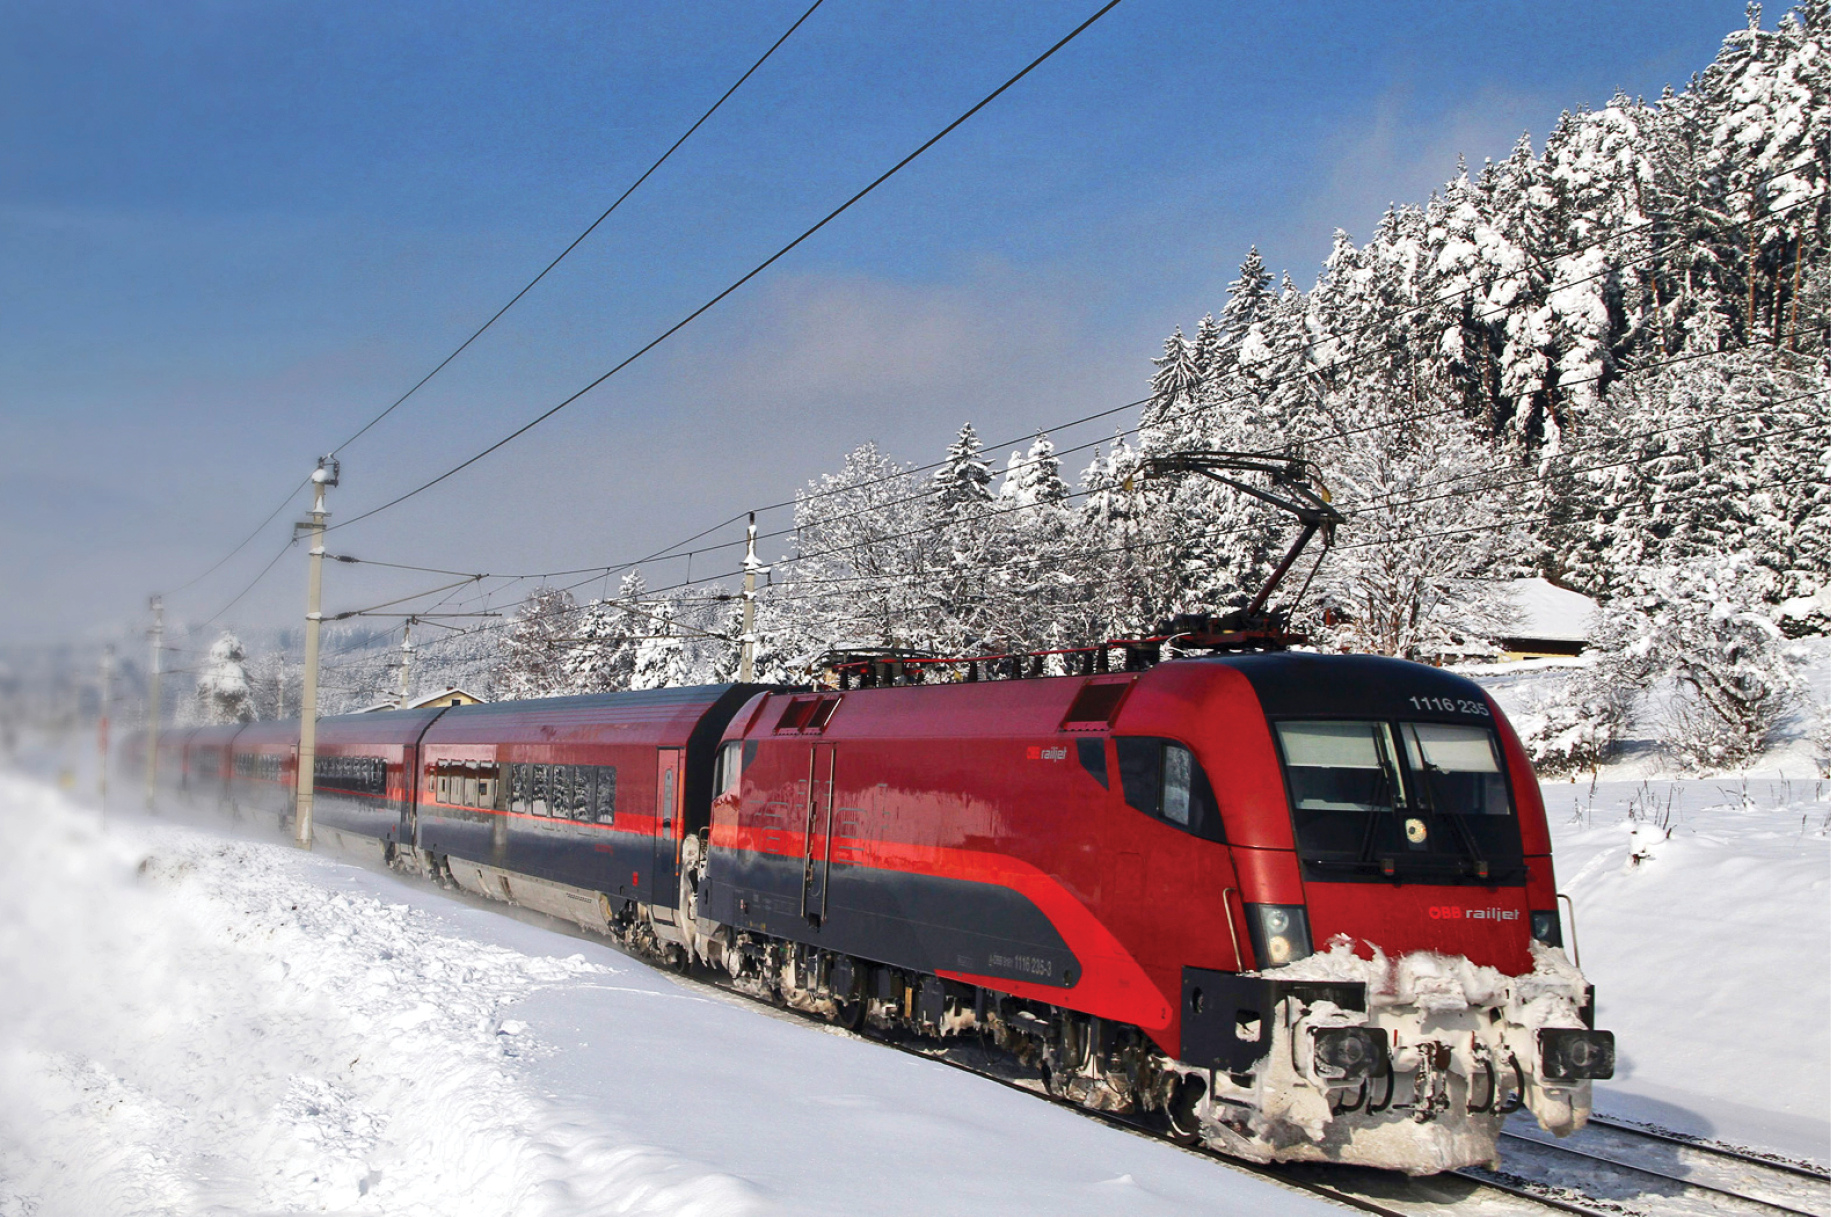 Railjet der ÖBB: In Österreich ist die Haftung bei der Nutzung der Eisenbahninfrastruktur anders geregelt als in Deutschland